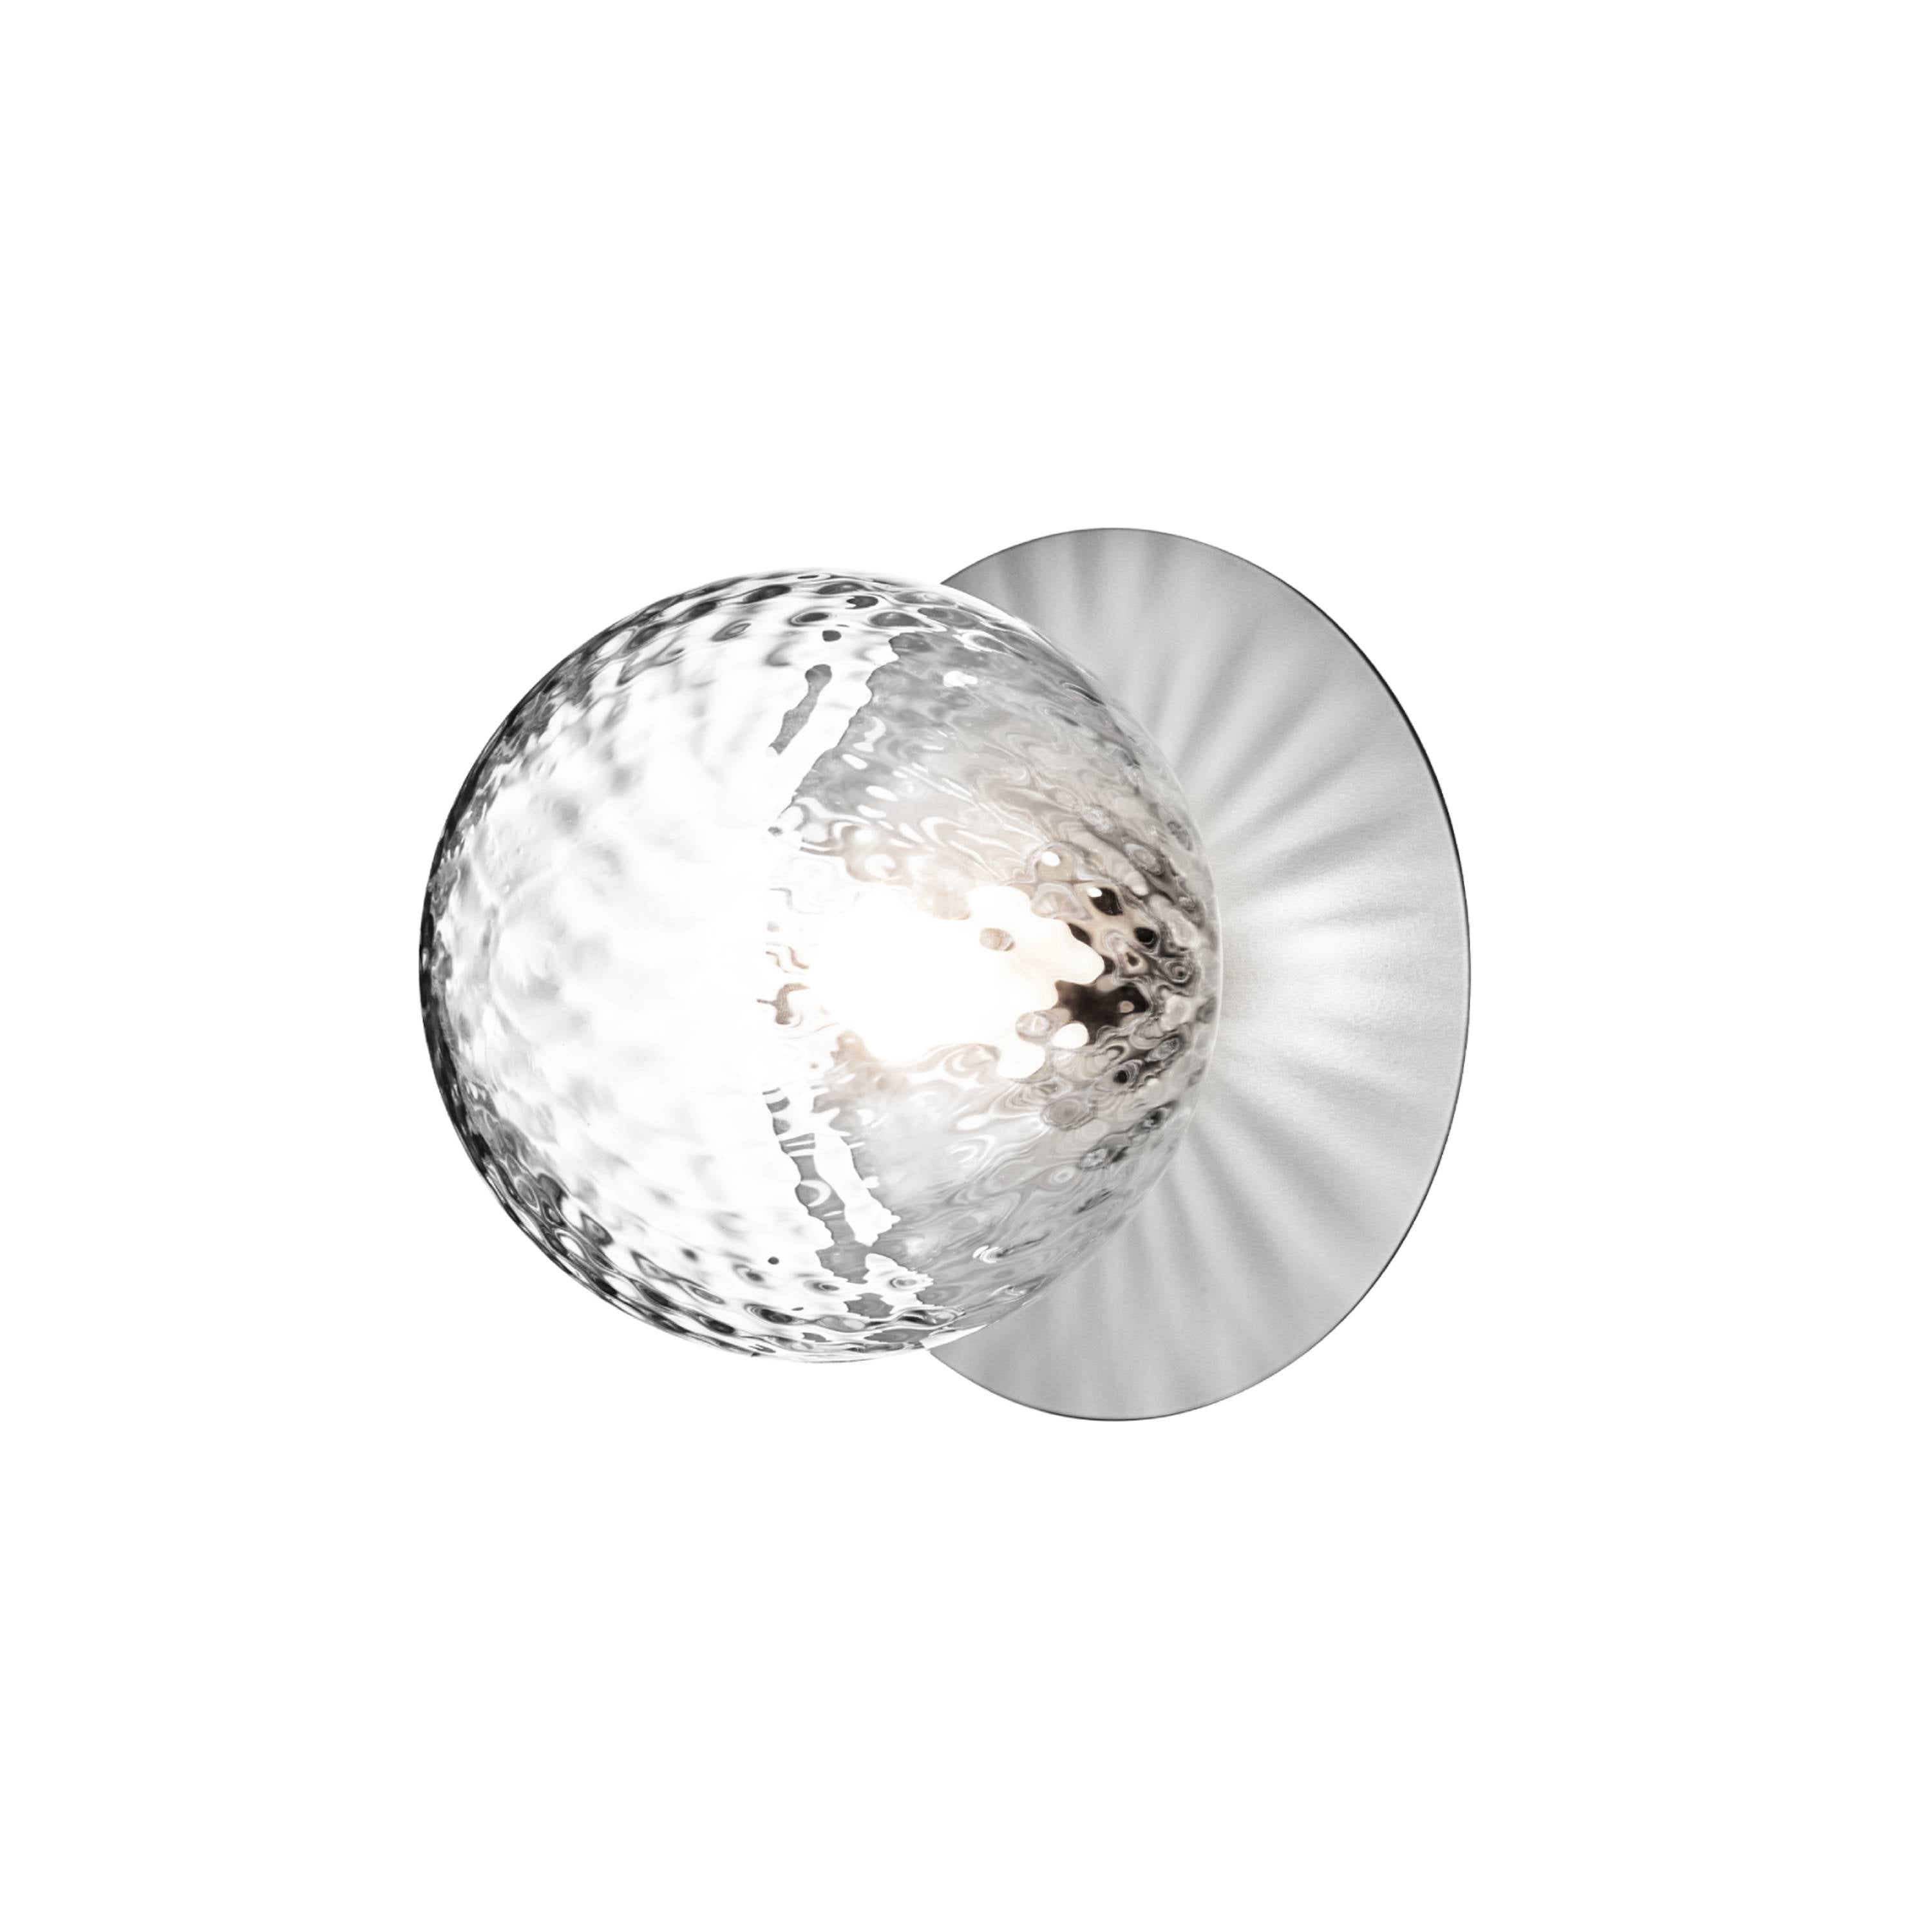 Liila 1 Wall/Ceiling Lamp: Medium - 6.5